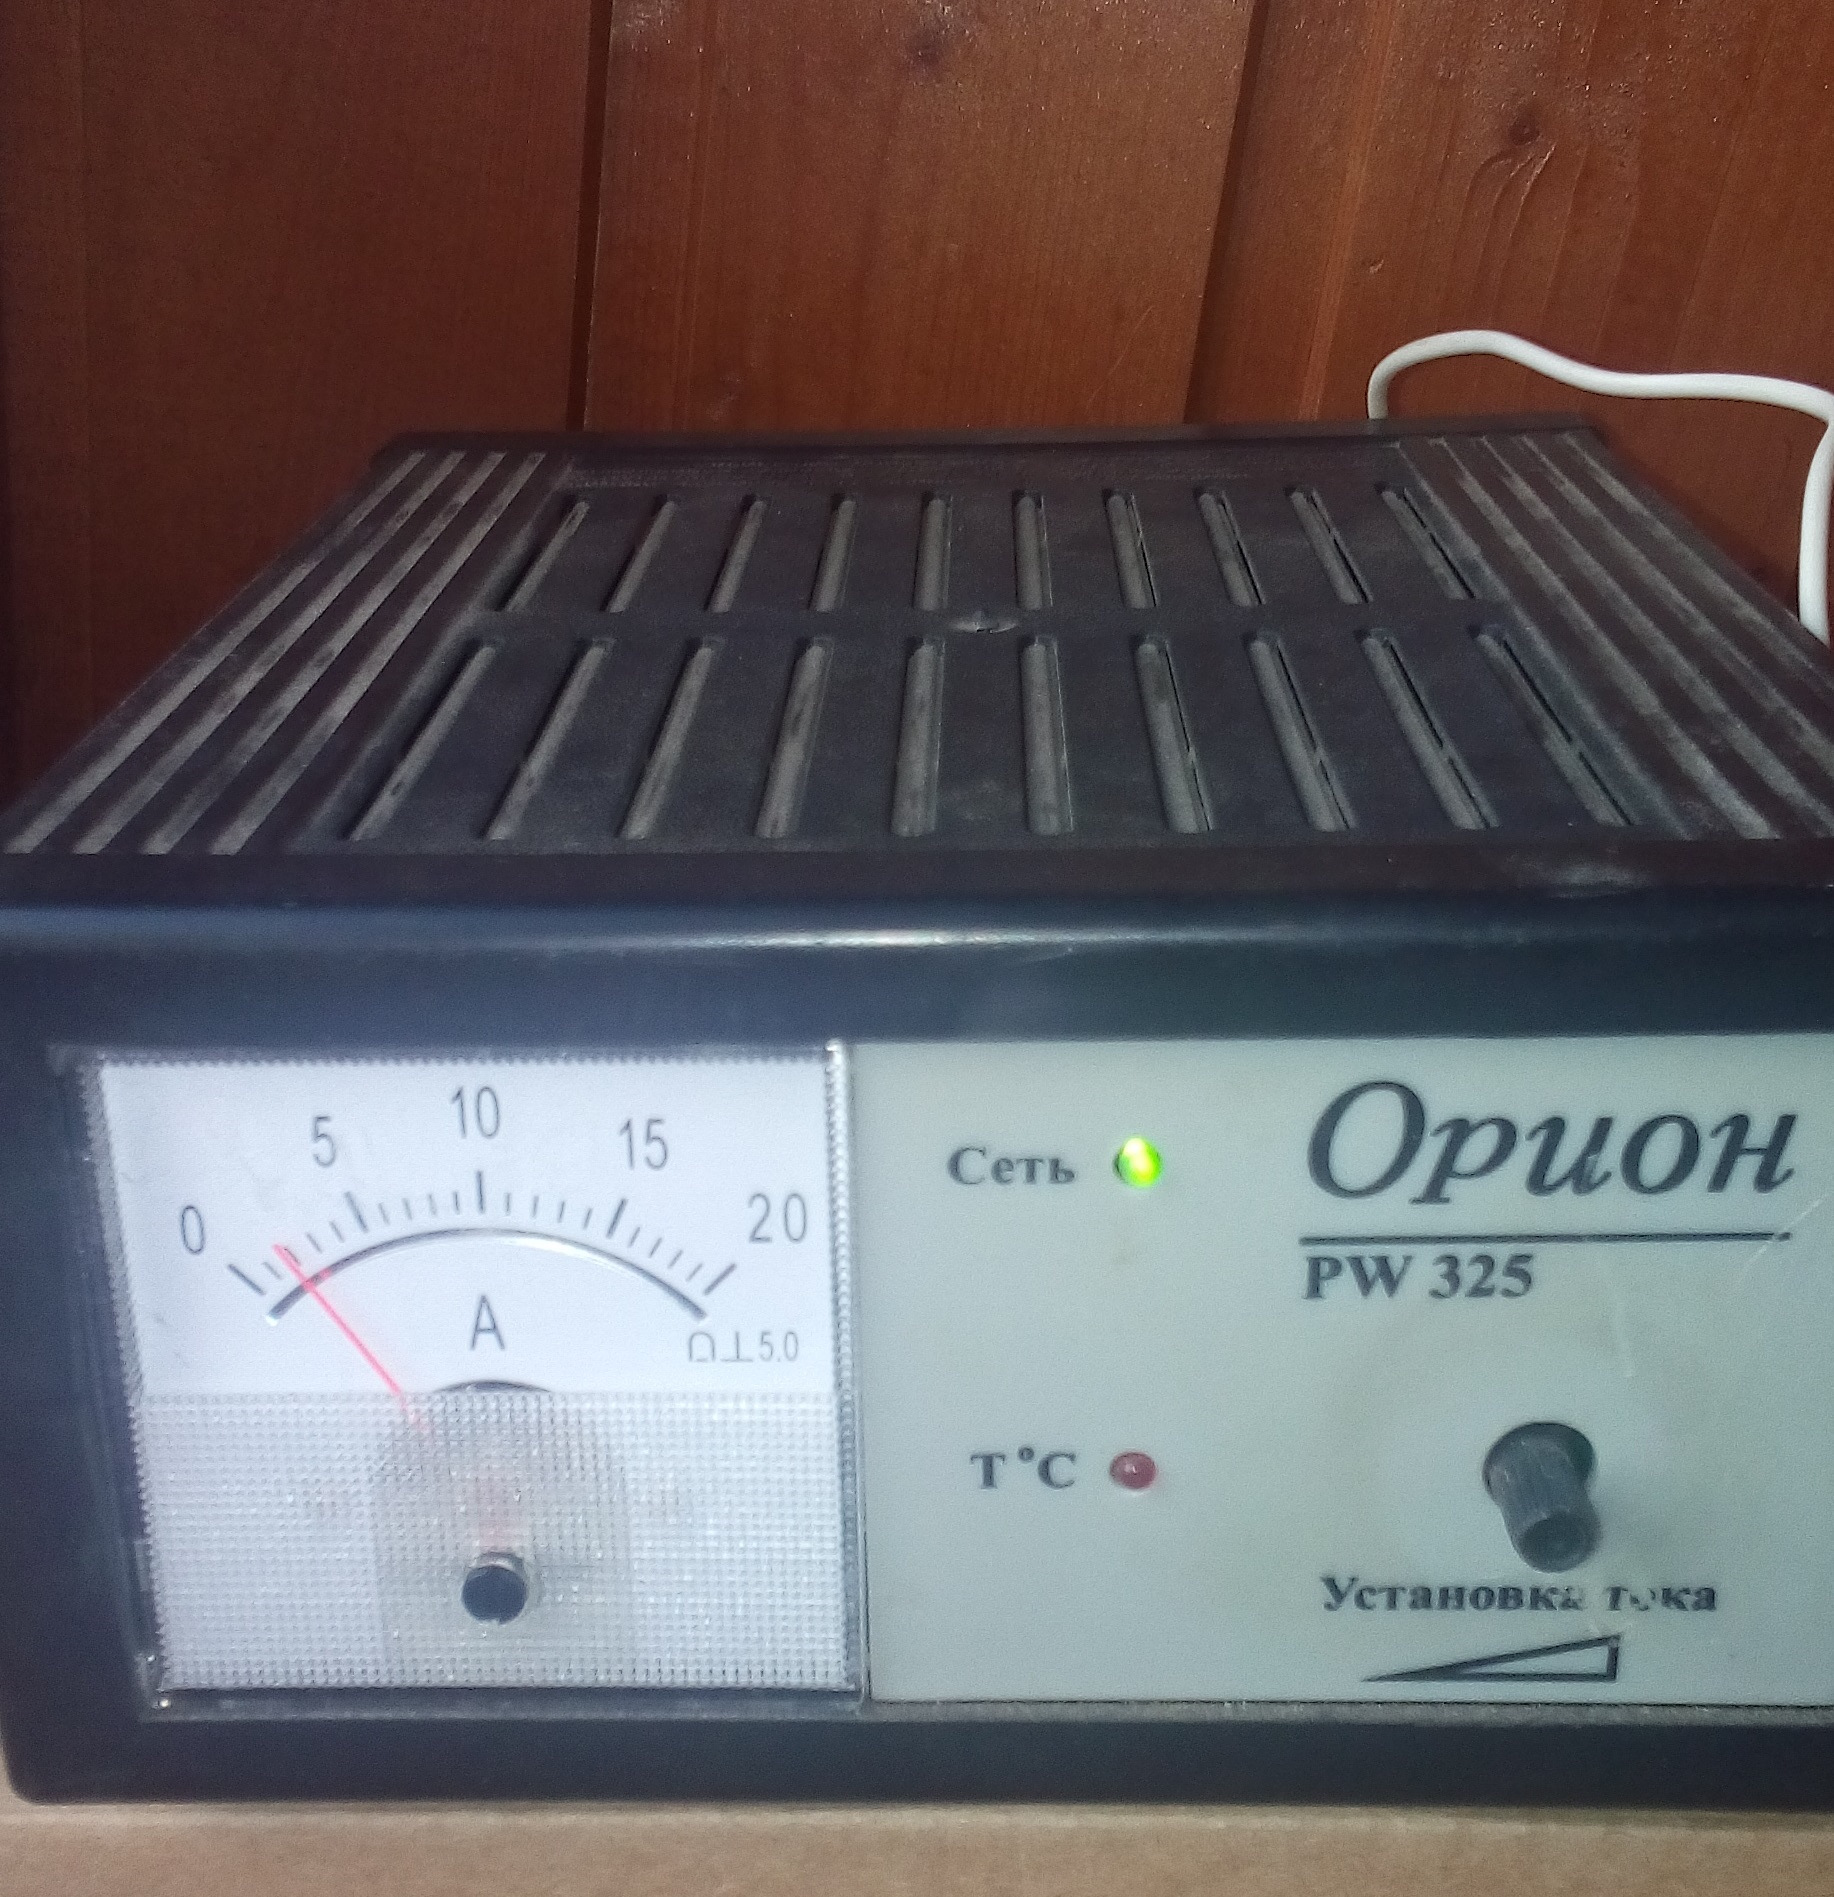 Зарядное pw325. Зарядное устройство Орион 325. Орион Вымпел 325. Зарядное устройство Орион pw325. Зарядное устройство Орион-325 Вымпел-30.